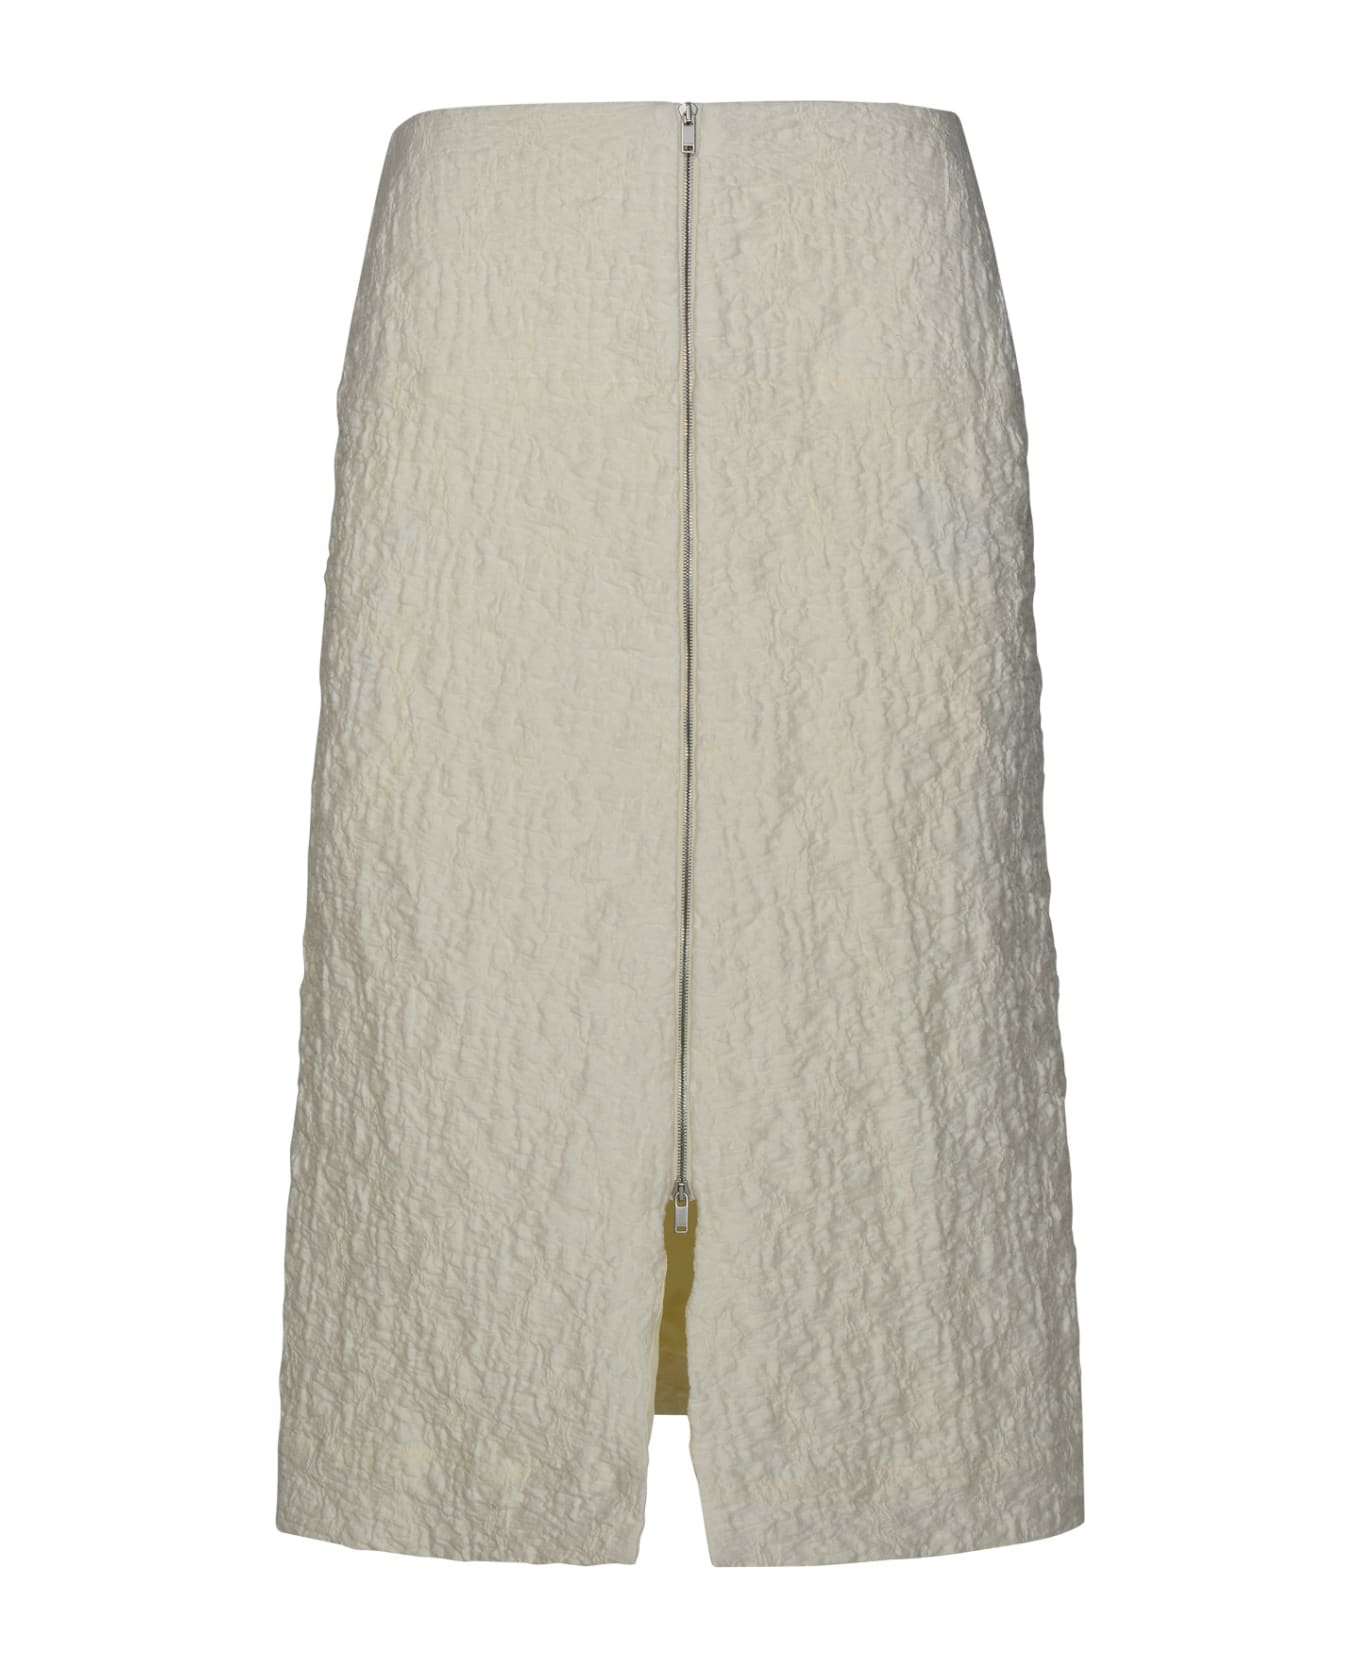 Jil Sander White Cotton Blend Skirt - White スカート